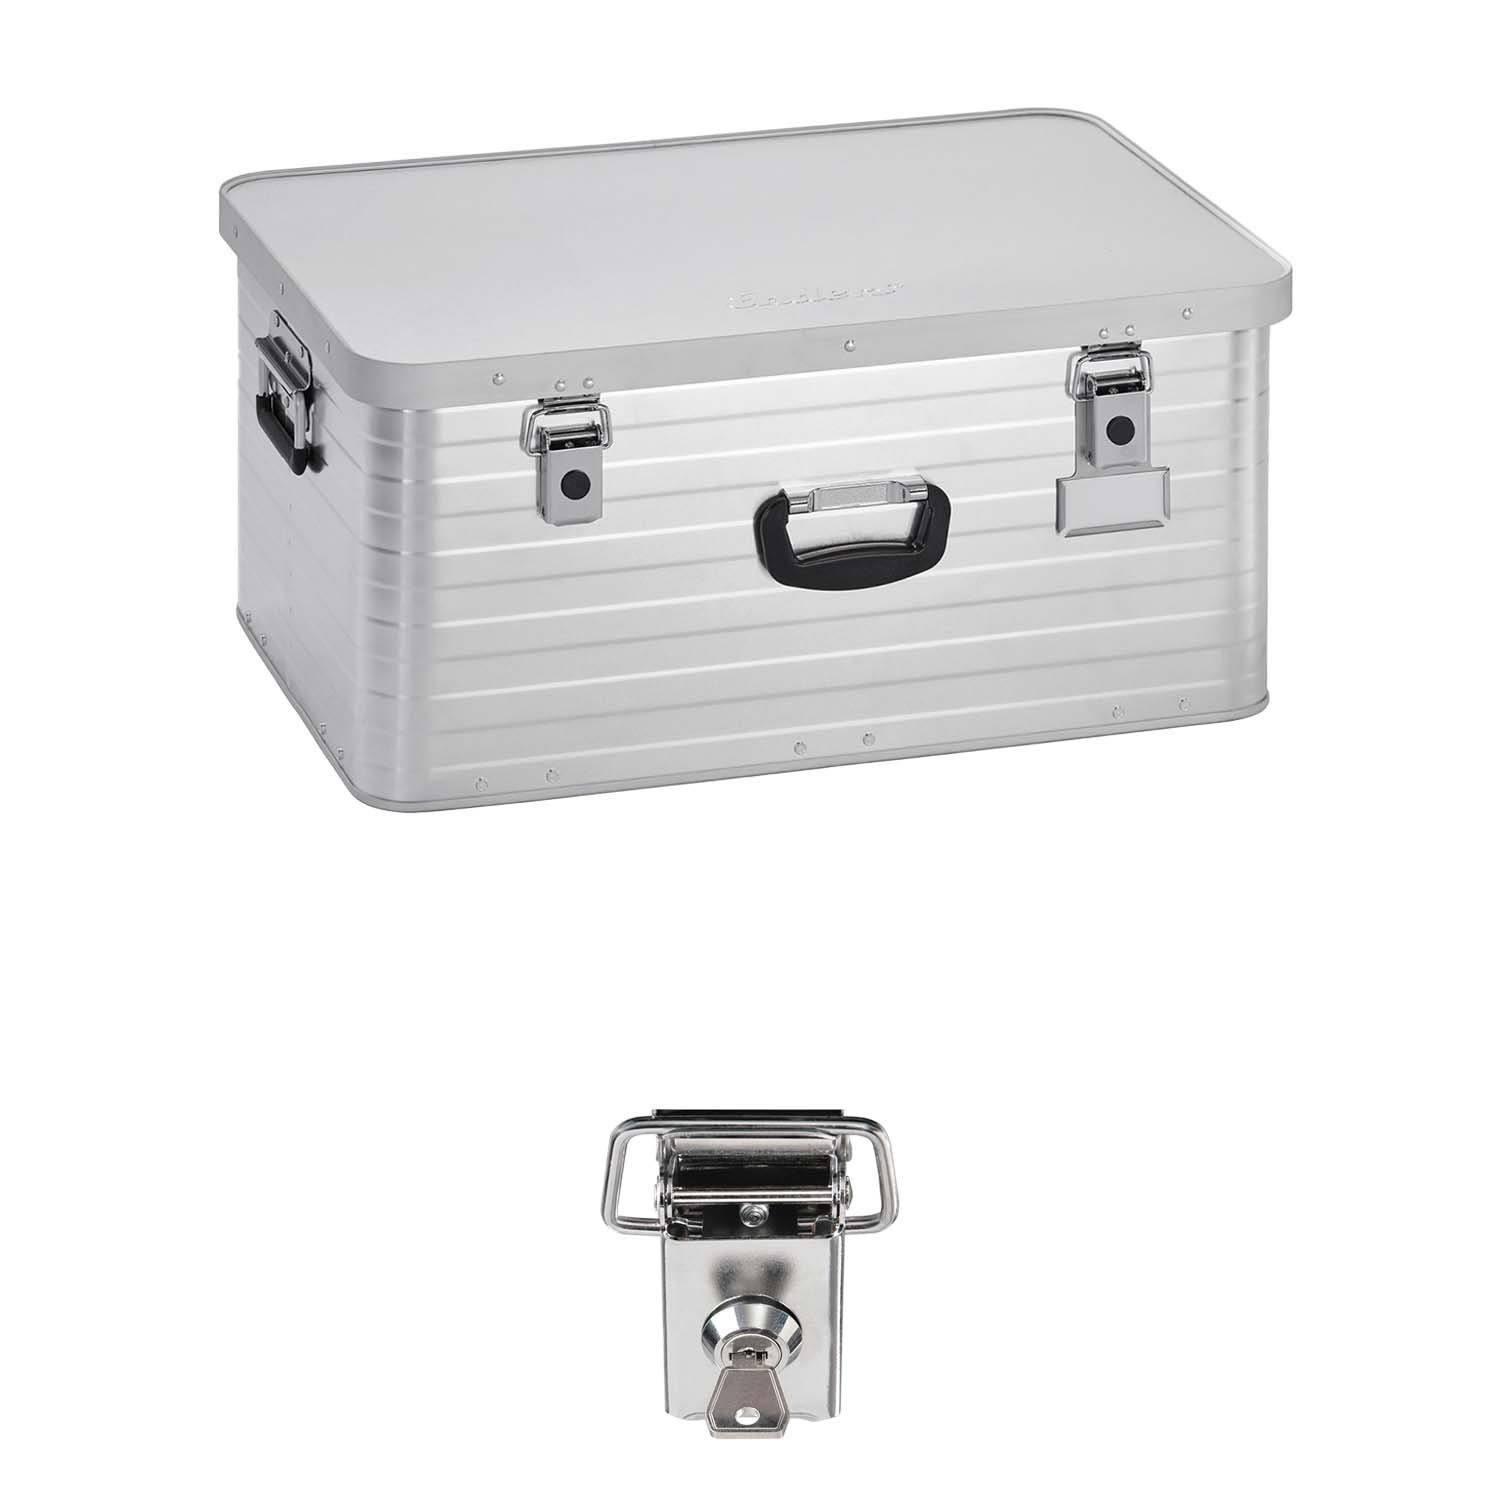 Enders® Aufbewahrungsbox Alubox 80 L+Schloss Set, hochwertig verarbeitet mit Moosgummidichtung, Alukiste Transportbox Lagerbox Alukoffer Metallkiste Alubox